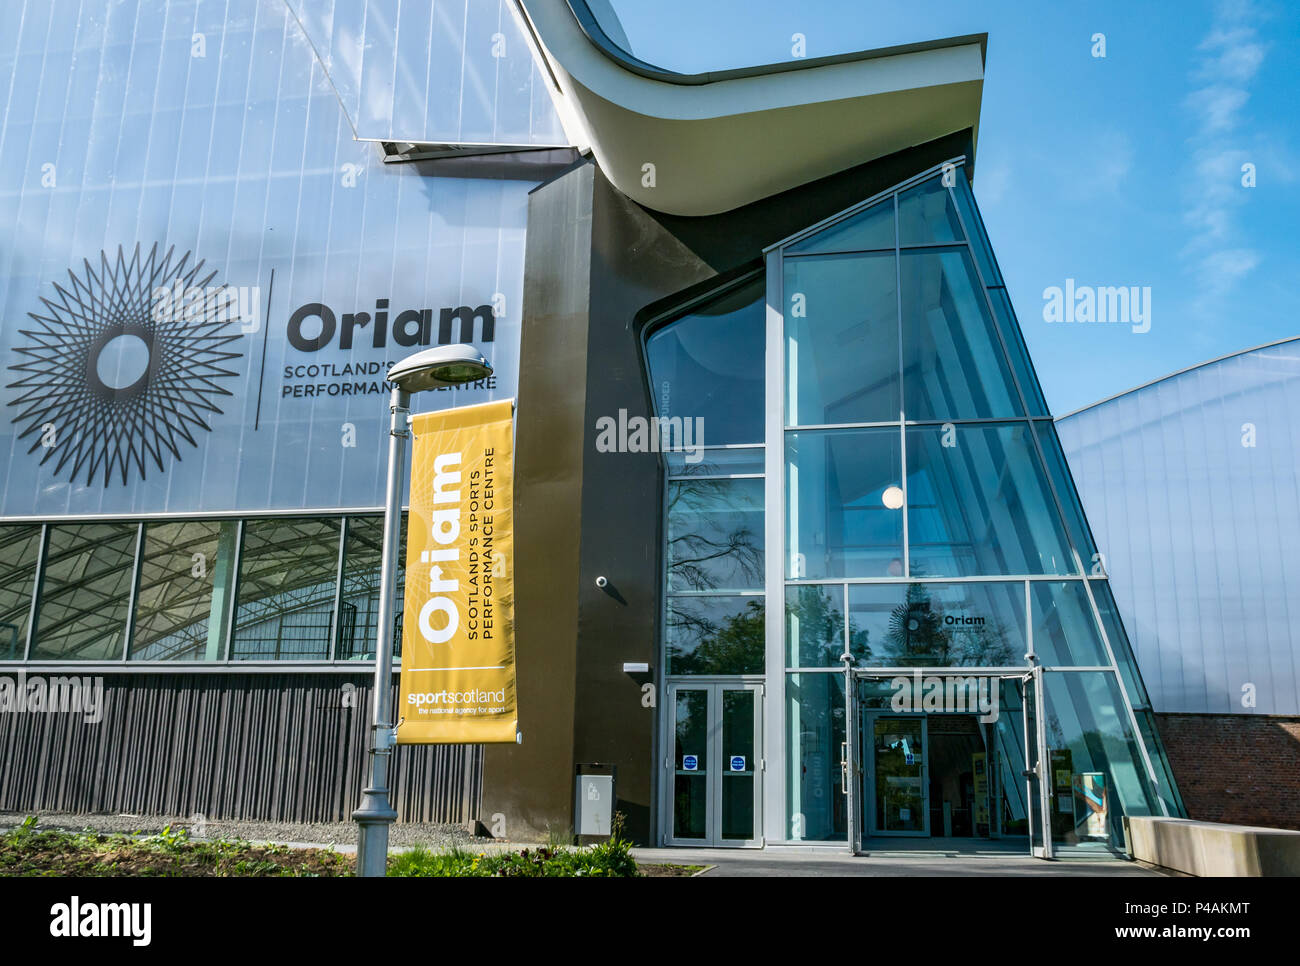 Entrée principale Centre national de formation sportive Oriam gymnase, Université Heriot Watt, Édimbourg, Écosse, Royaume-Uni Banque D'Images